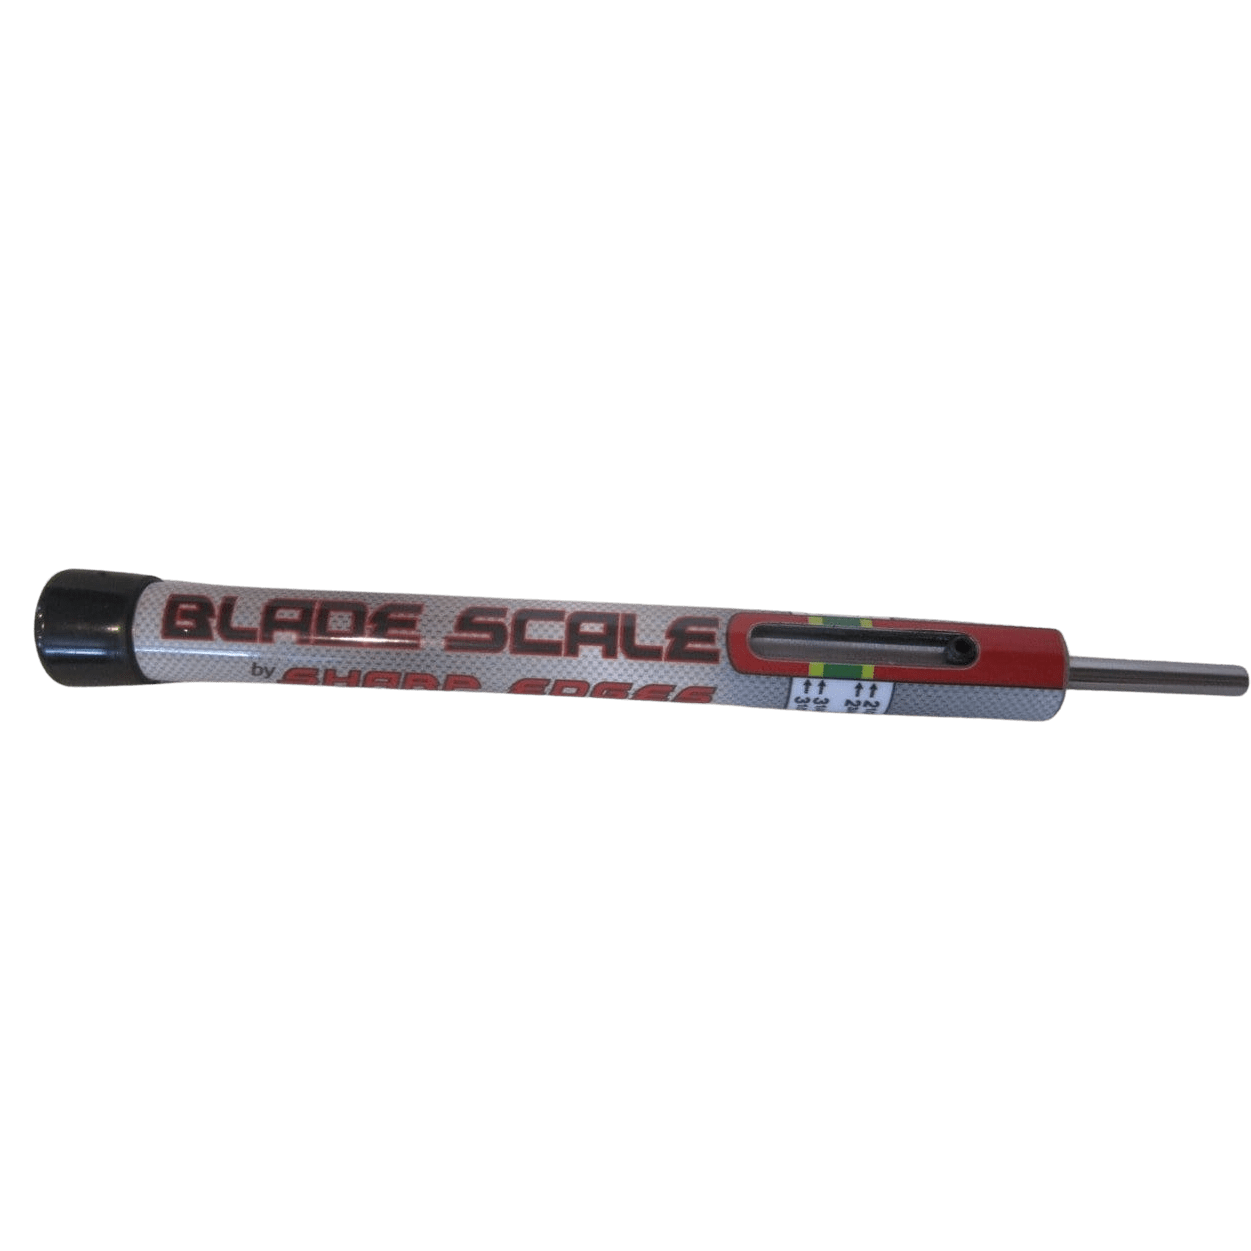 Clipper Blade Test Scale